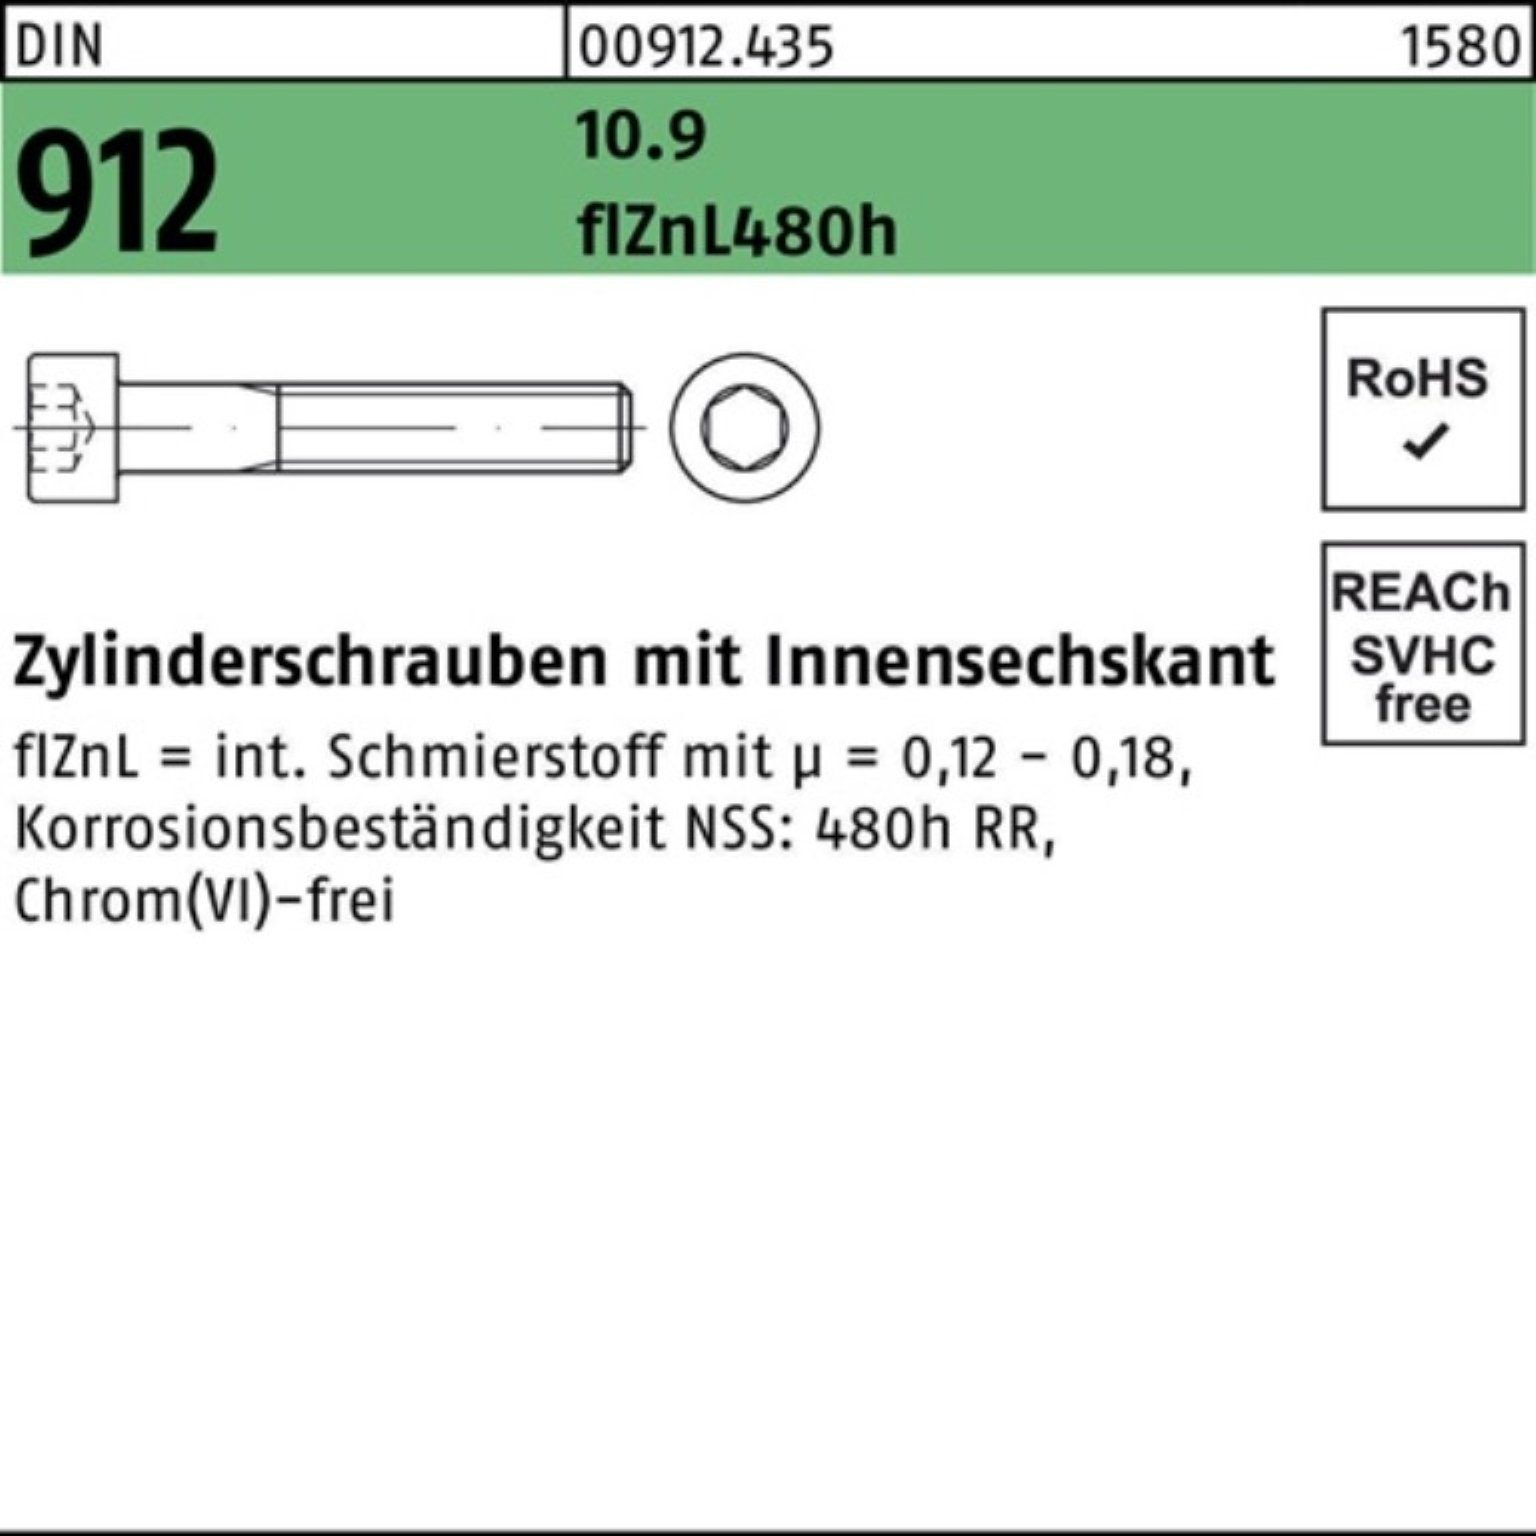 Innen-6kt DIN M10x25 Zylinderschraube Zylinderschraube Reyher flZnL/nc/x/x 912 200er Pack 10.9